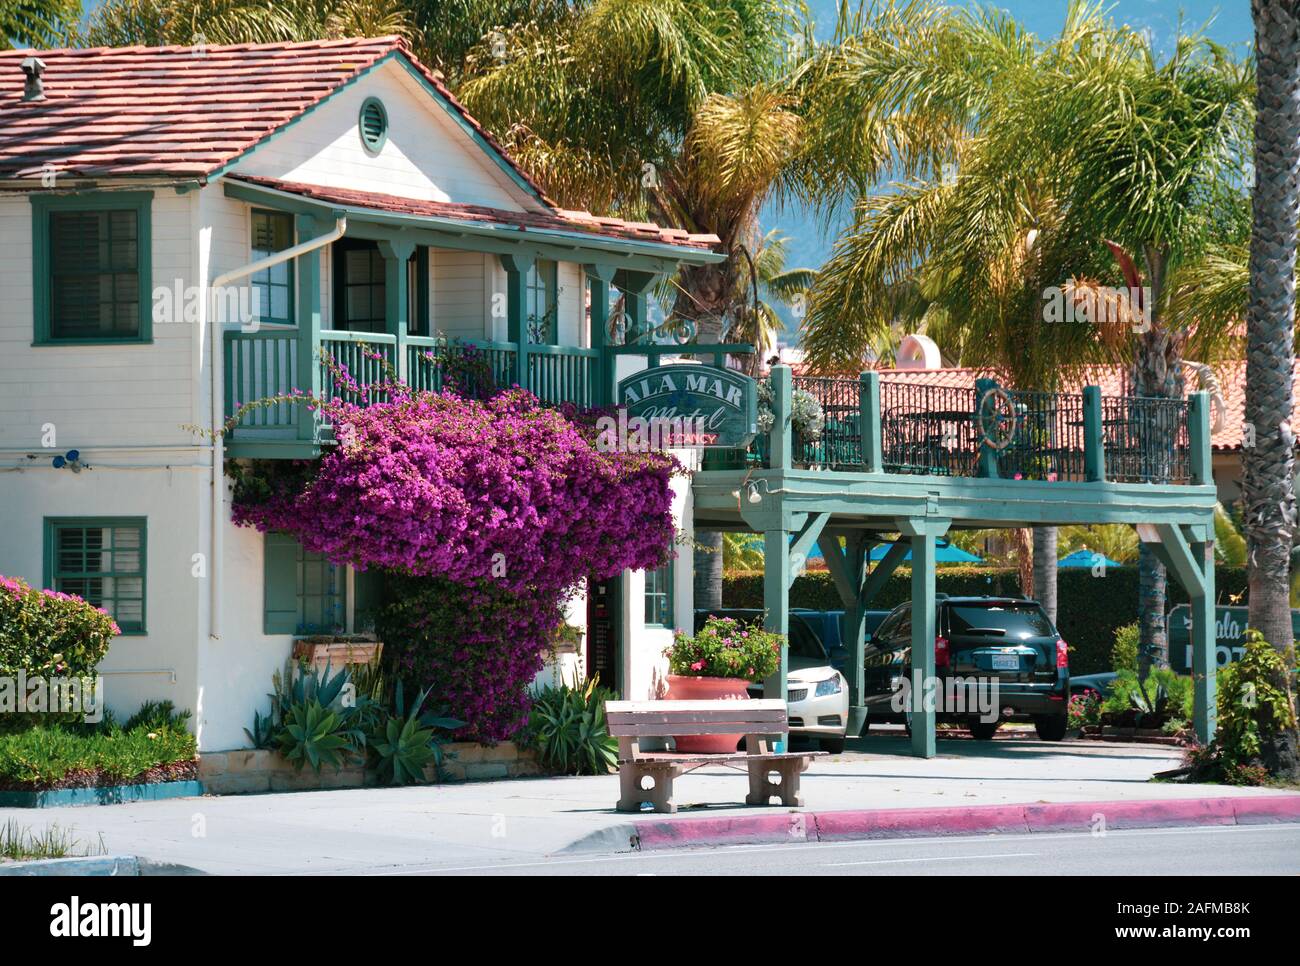 Un impressionante magenta Bougainvillea impianto all'ingresso della pittoresca ala Mar Motel sulla popolare Cabrillo Boulevard a Santa Barbara, CA, Stati Uniti d'America Foto Stock